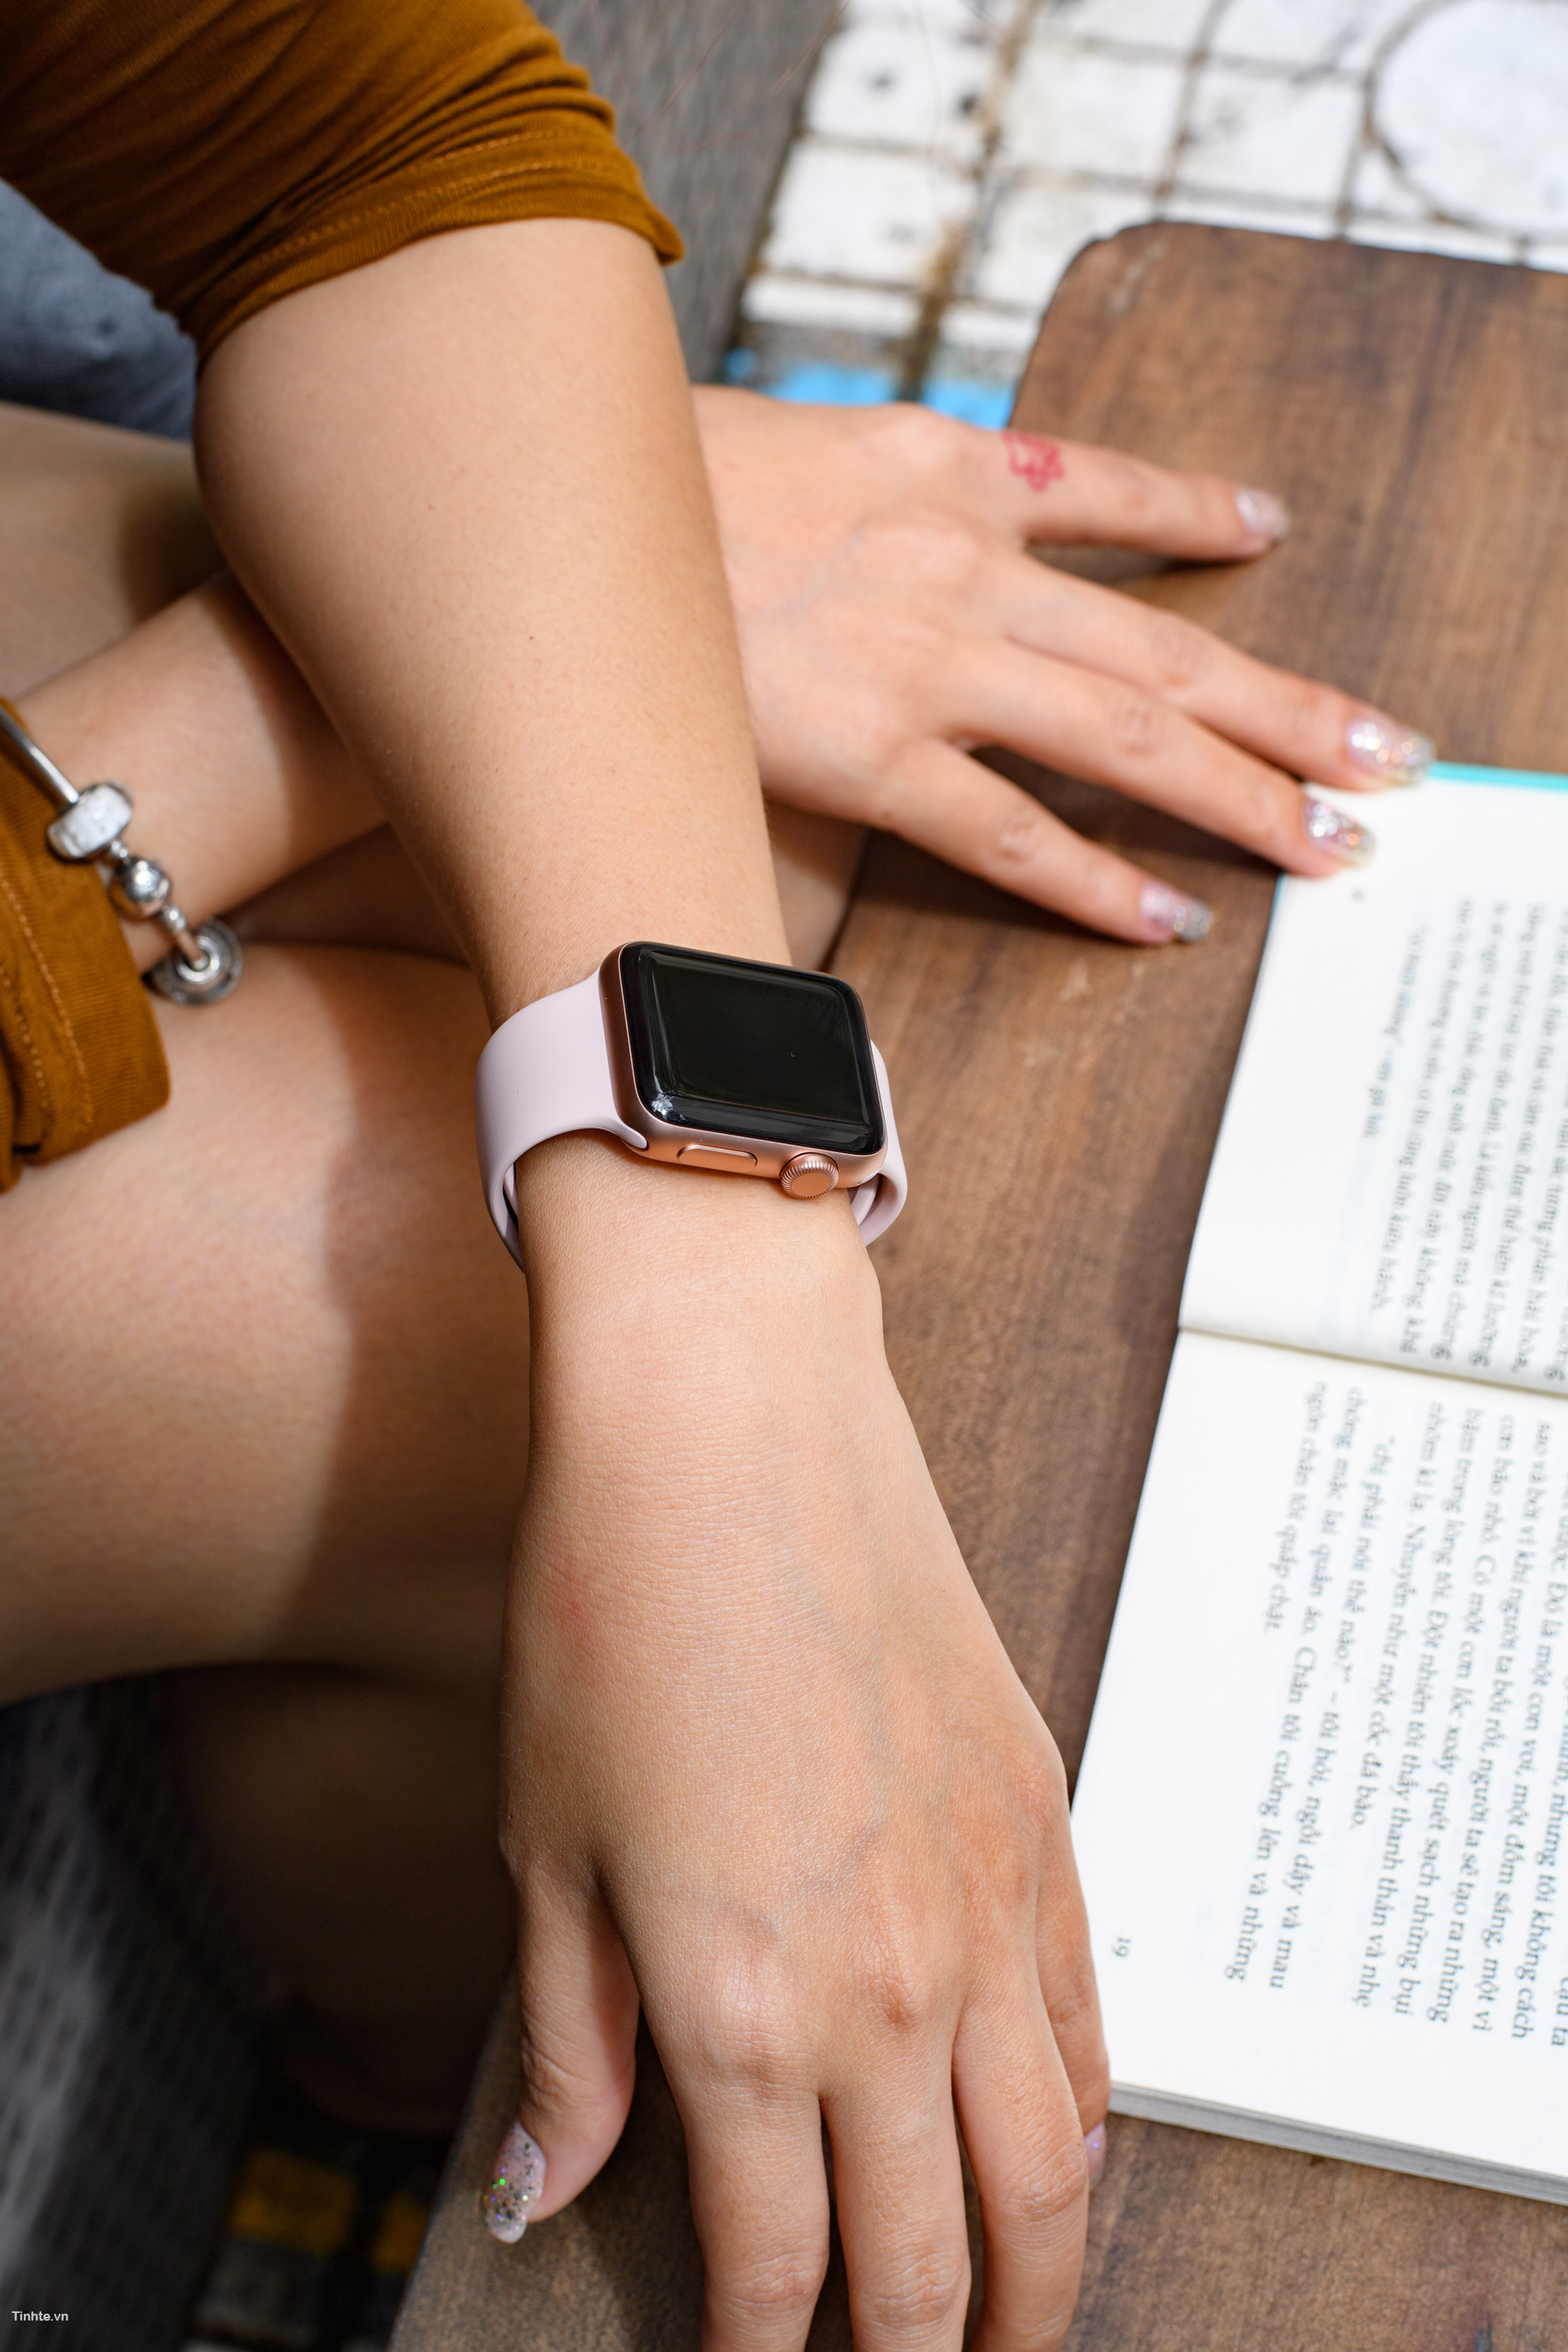 Apple ra mắt Apple Watch SE giá rẻ: Thiết kế giống Series 6, giá từ 279 USD  - Blogs các sản phẩm công nghệ zShop.vn